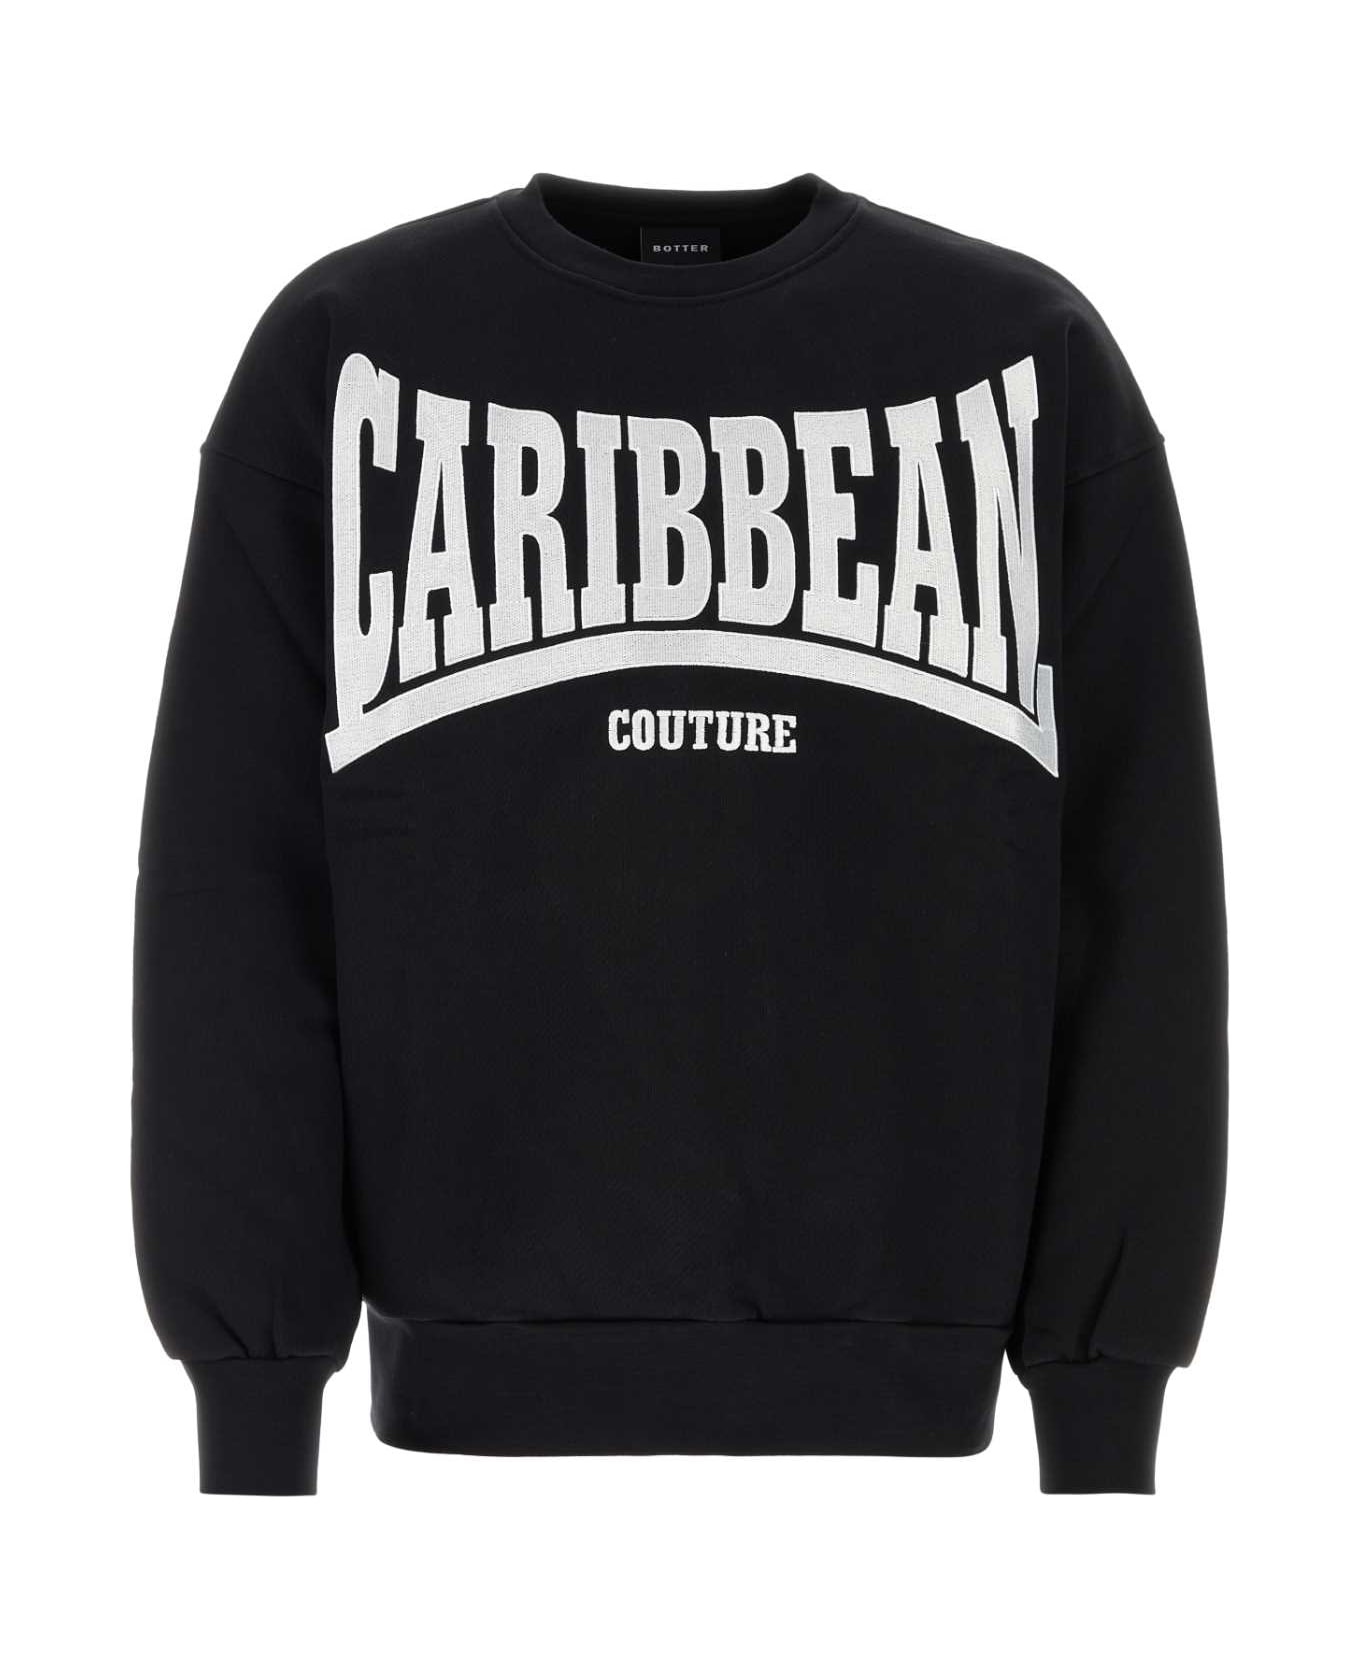 Botter Black Cotton Sweatshirt - BLACK CARIBBEAN COUTURE EMBR